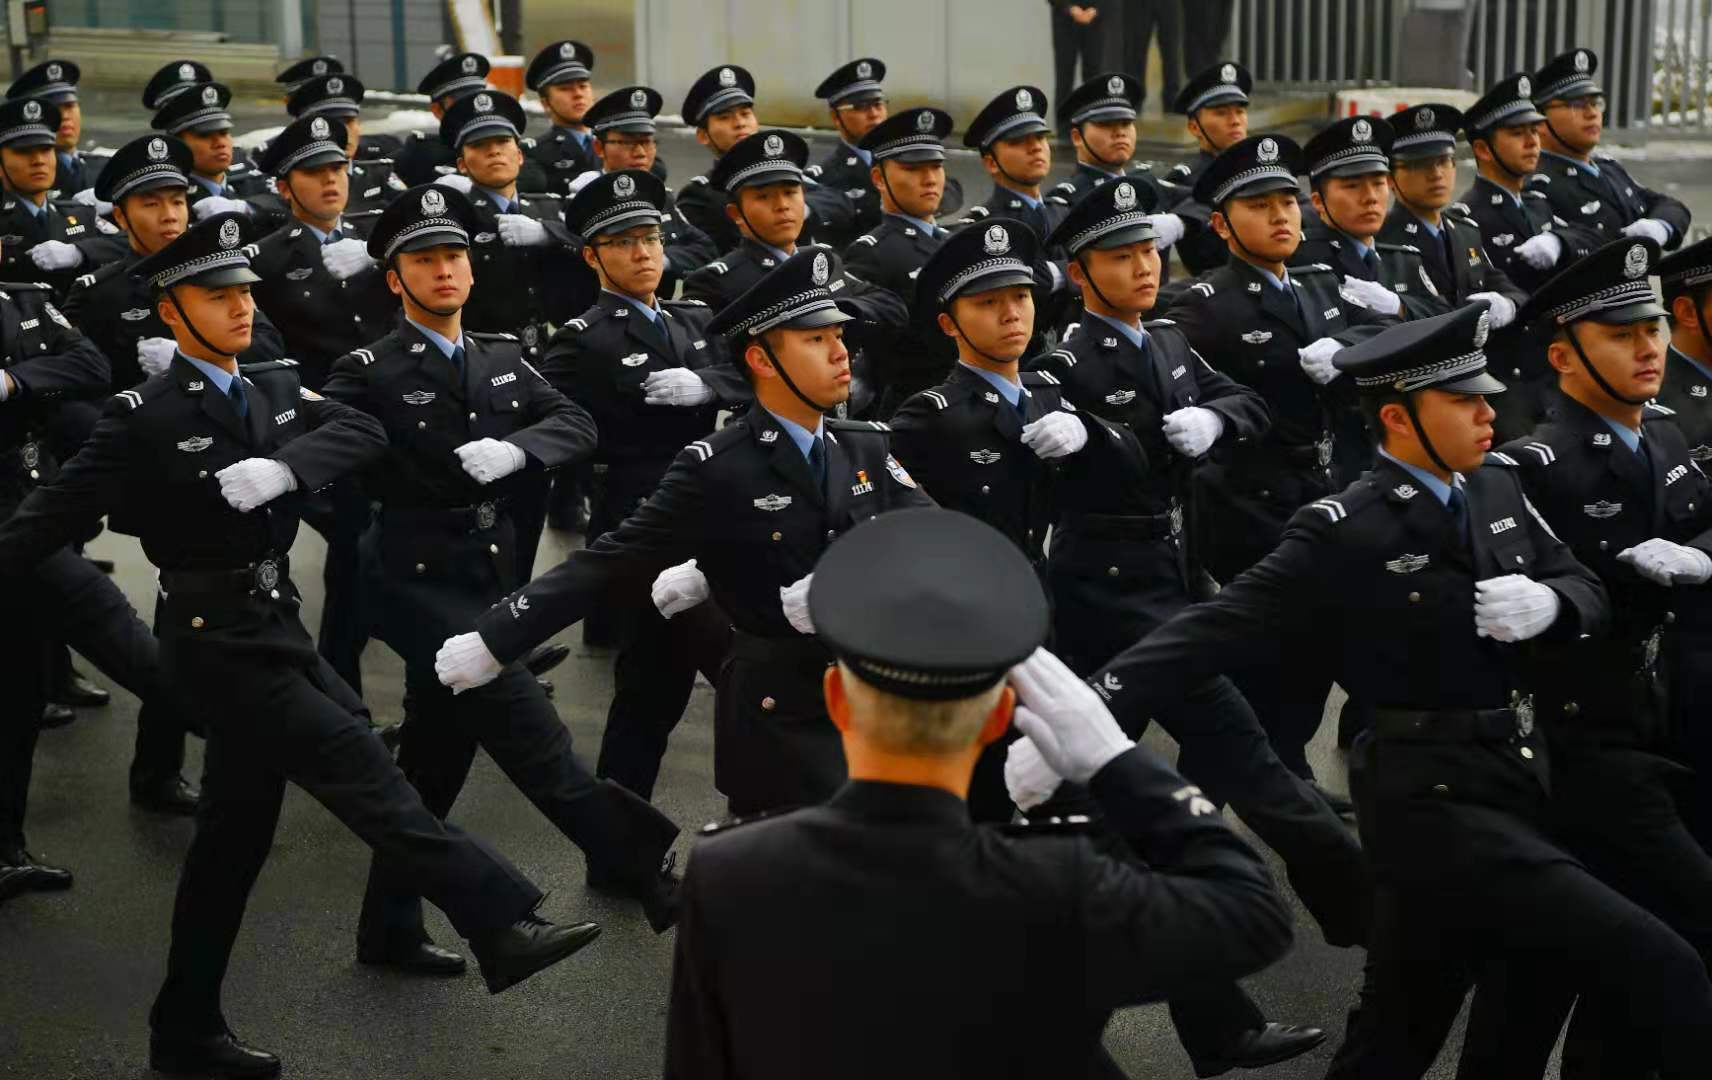 四川高院举办首个“人民警察节”活动-四川省高级人民法院